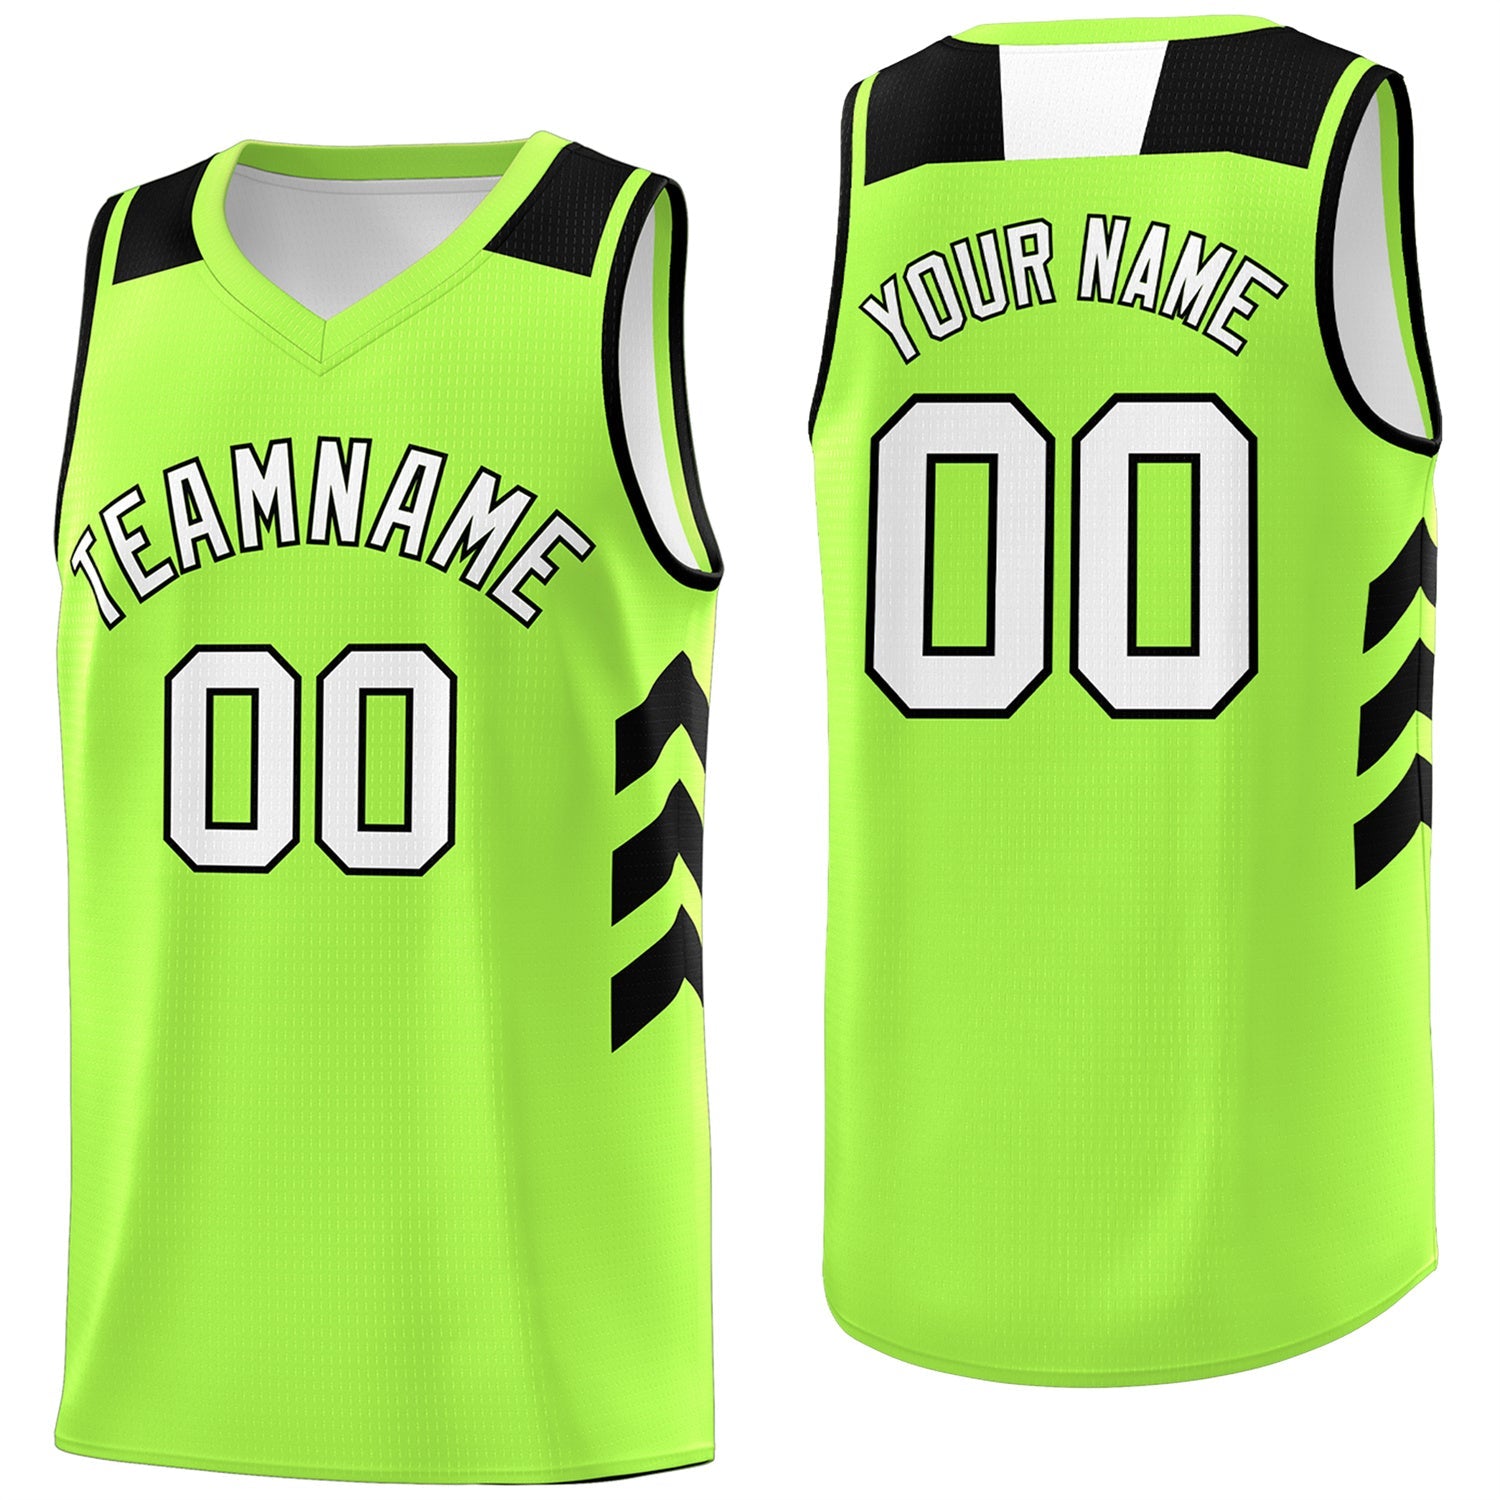 Neon Green Basketball Jersey